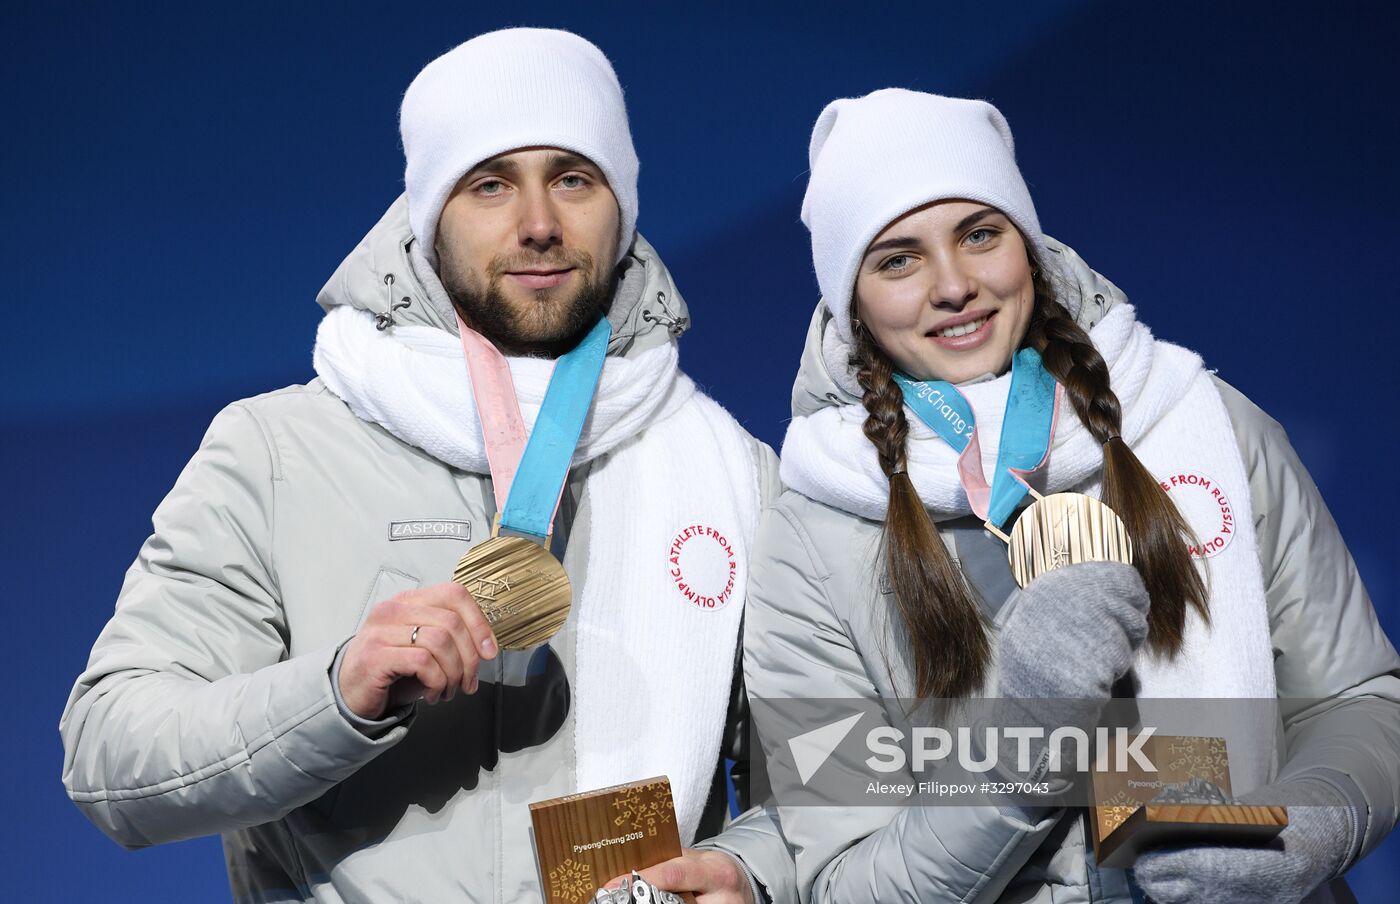 2018 Winter Olympics. Award ceremony. Day five